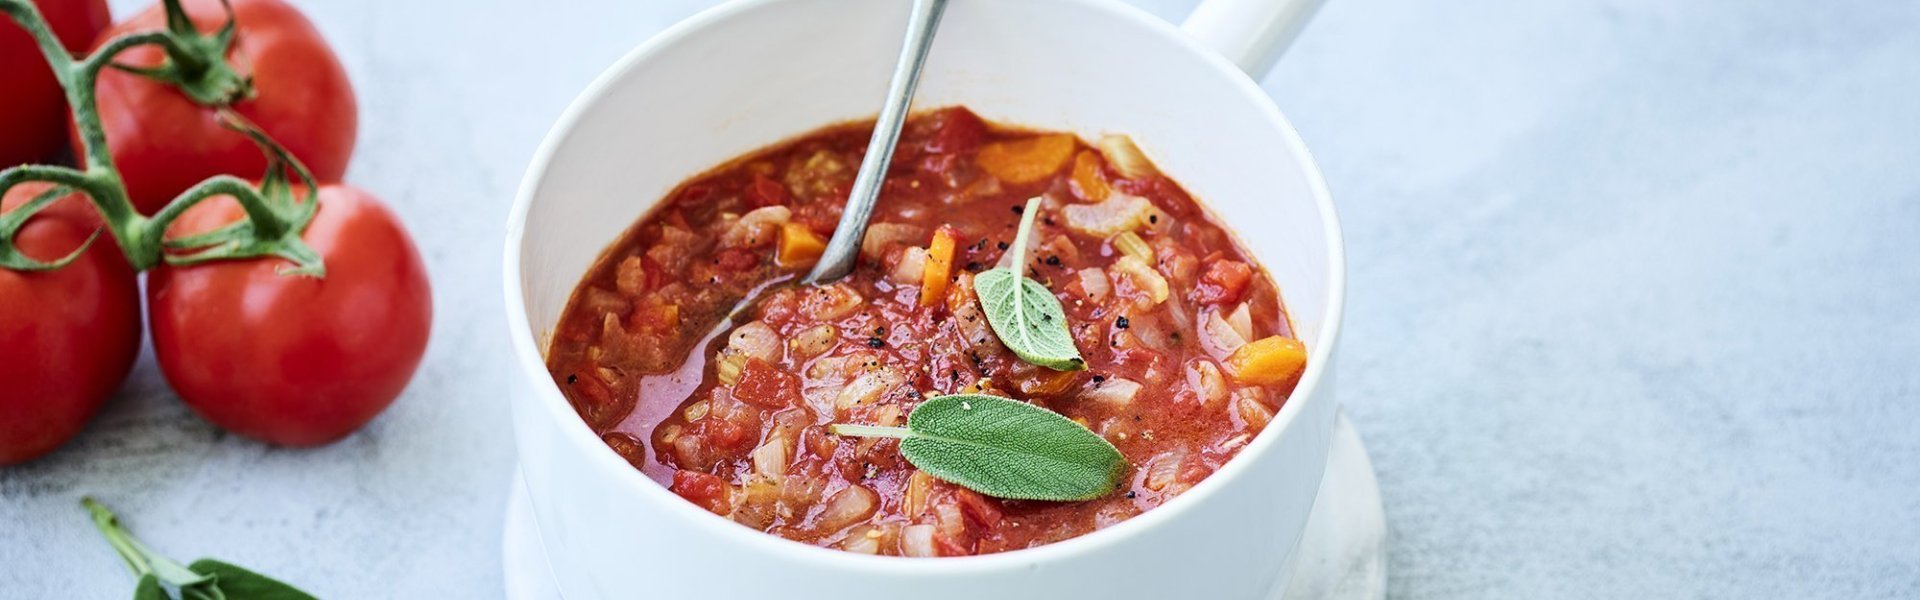 Een klassieke tomaten die is klaargemaakt in een witte kookpot. De tomatensaus zit boordevol verse groenten en tomaten, natuurlijk. Er liggen enkele blaadjes salie op de saus en een verse tros tomaten naast de pot op het marmere aanrecht.